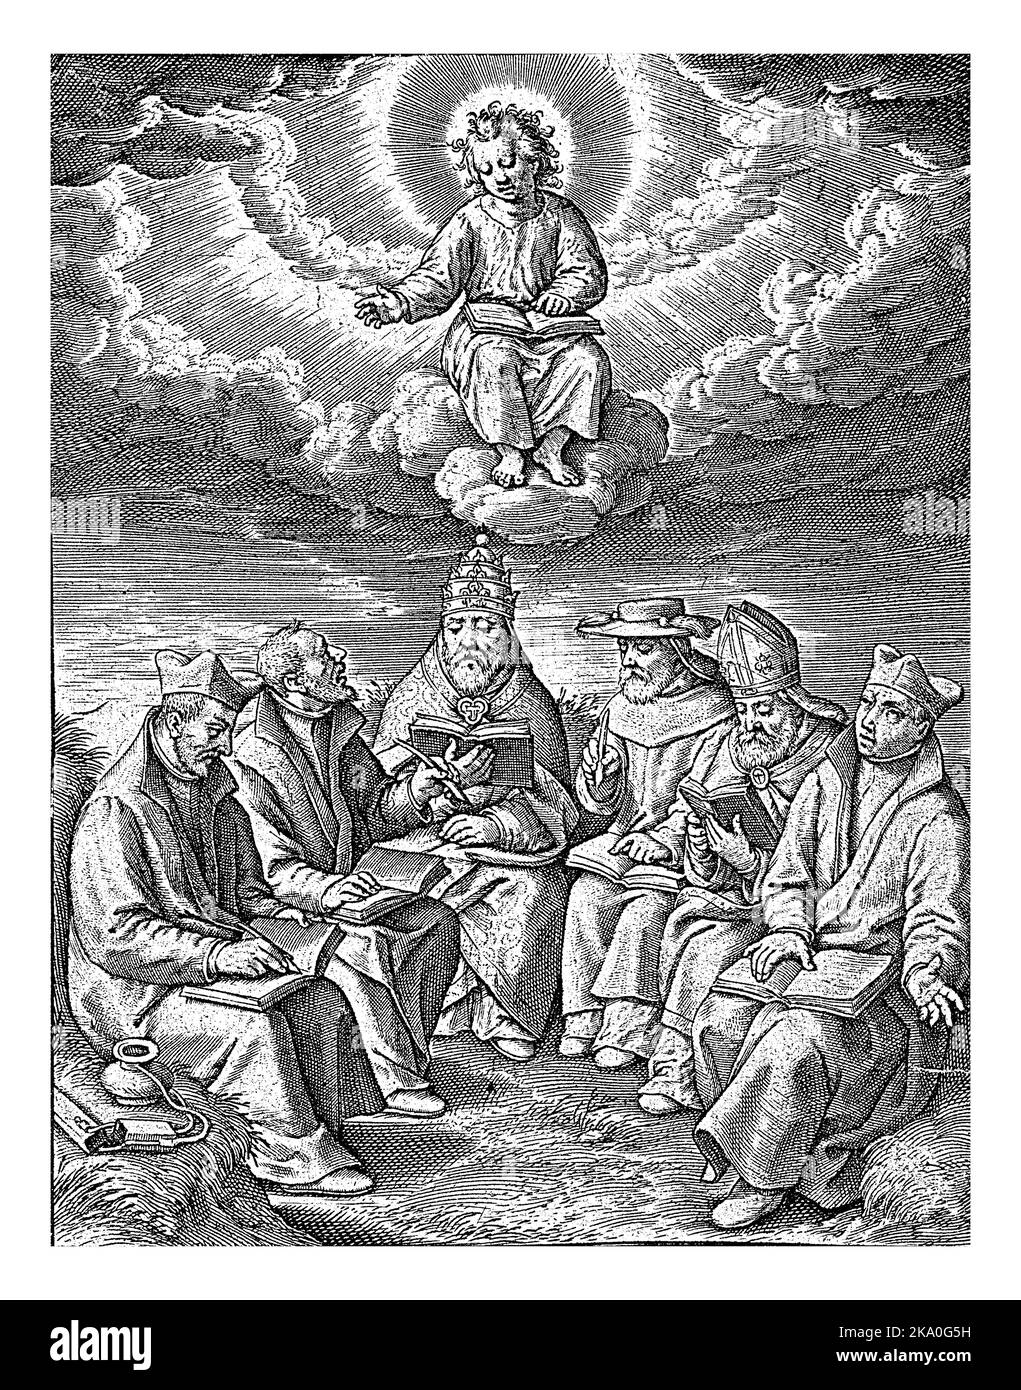 Adorazione del Cristo Bambino da parte dei chierici, Hieronymus Wierix, 1563 - prima del 1619 sei chierici adorano il Cristo Bambino che li benedice da una nuvola. Foto Stock